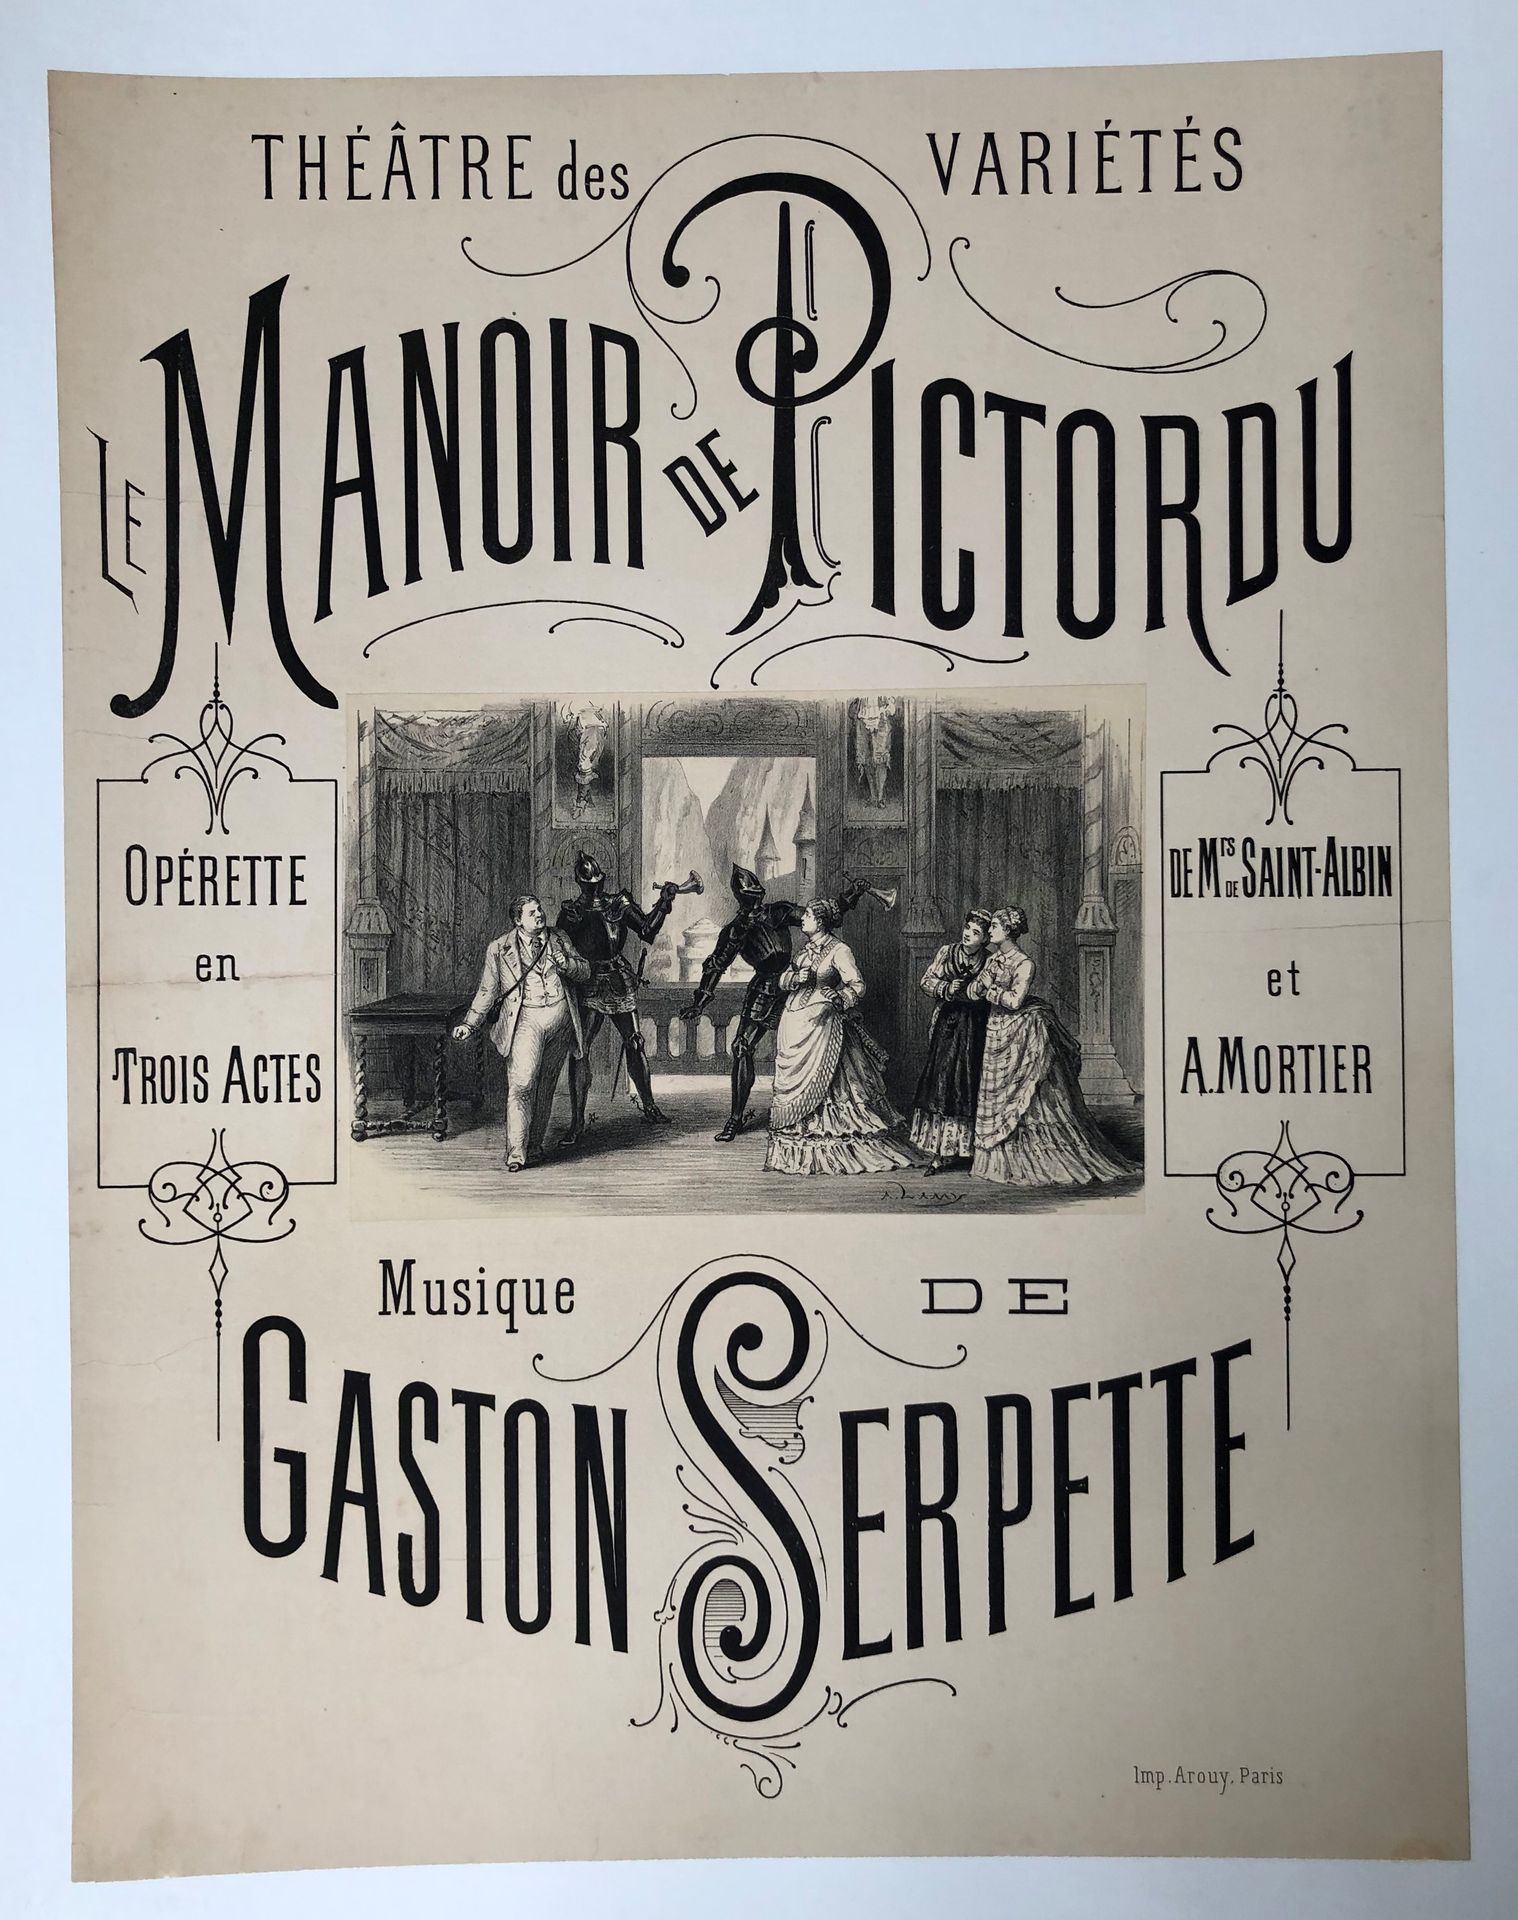 Null 拍品包括21张海报。
加斯顿-塞佩特（1846-1904）。皮克托尔杜的庄园 
三幕小歌剧，由圣阿尔宾和A.莫蒂埃 
Variétés剧院，1875年&hellip;